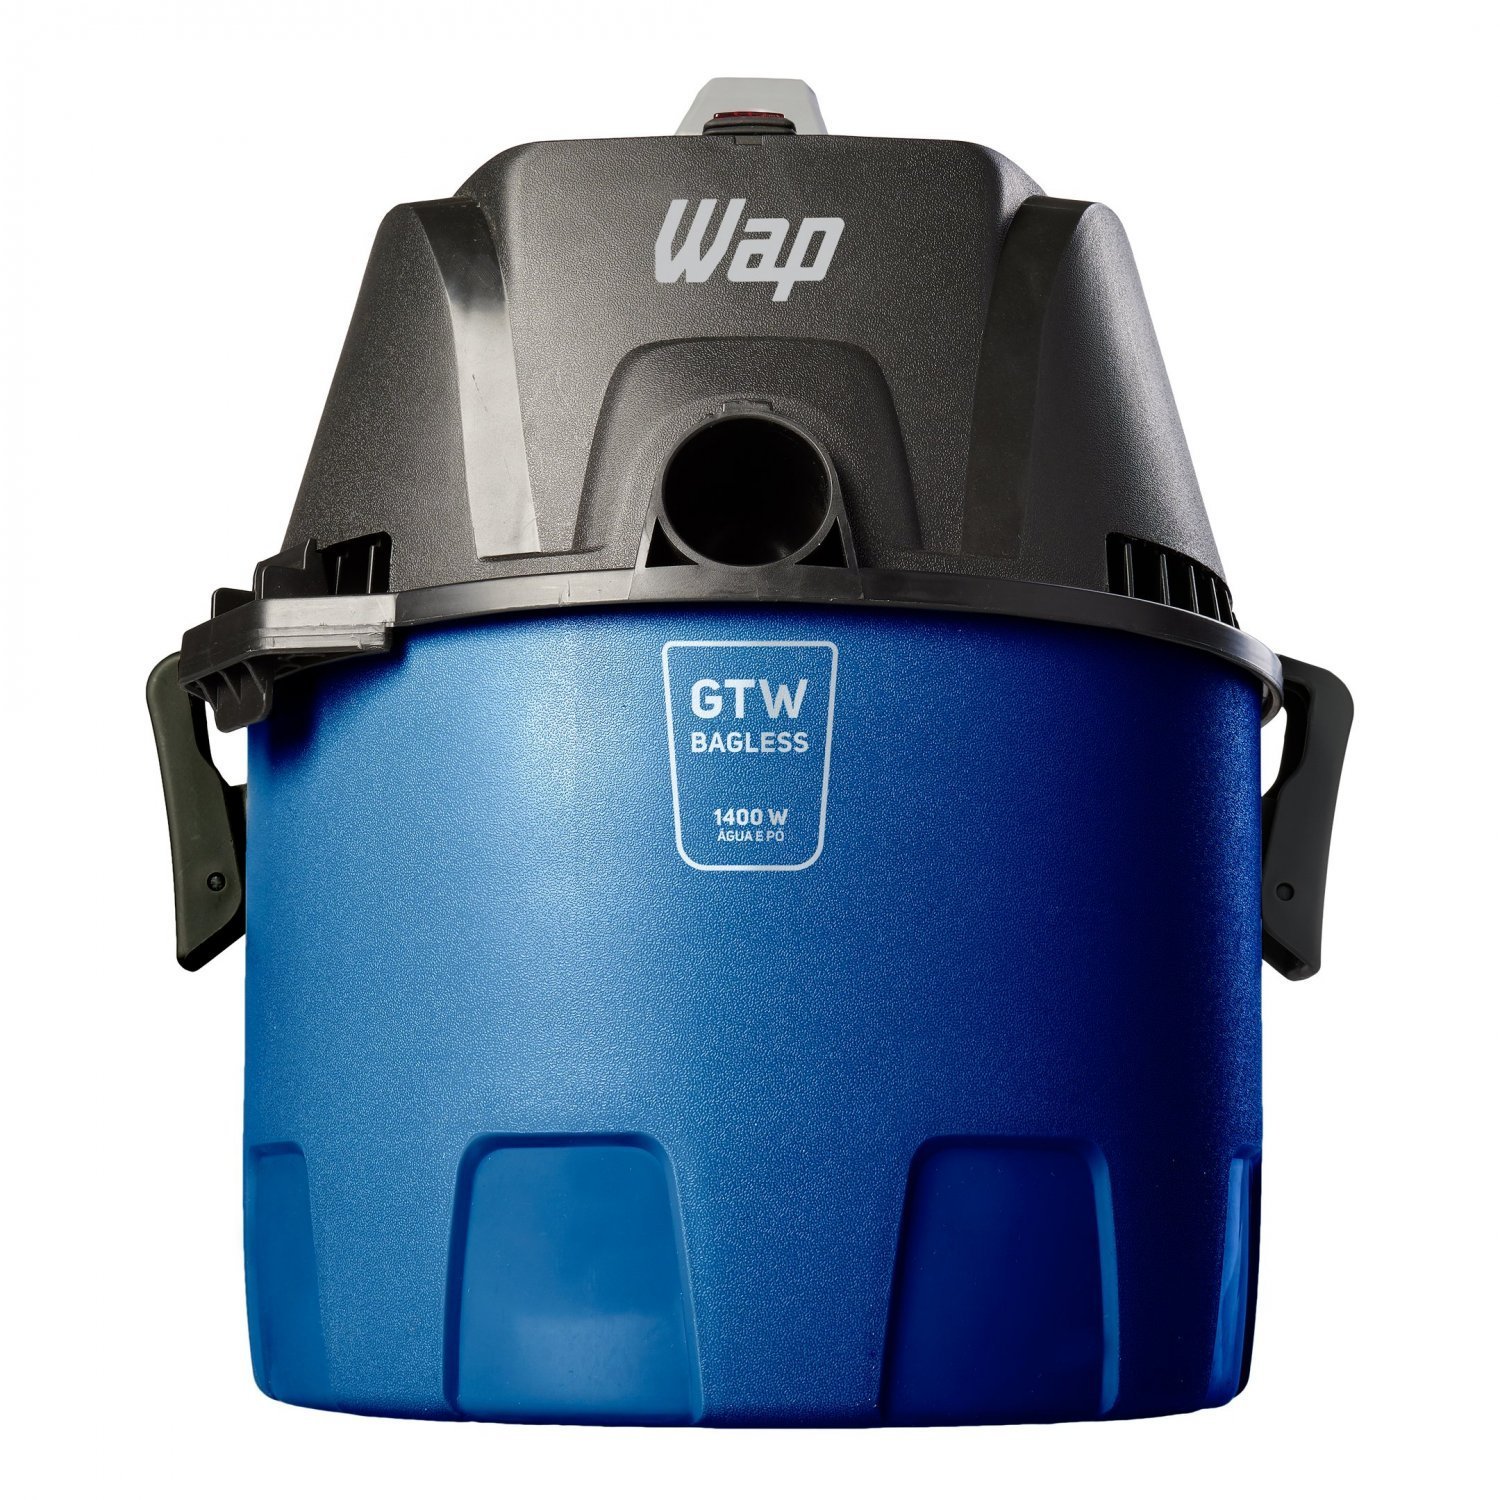 Aspirador de Água e Pó WAP GTW Bagless Alça Ergonômica 6L com Bocal de Sopro 1400W 127V Azul/Preto - 8